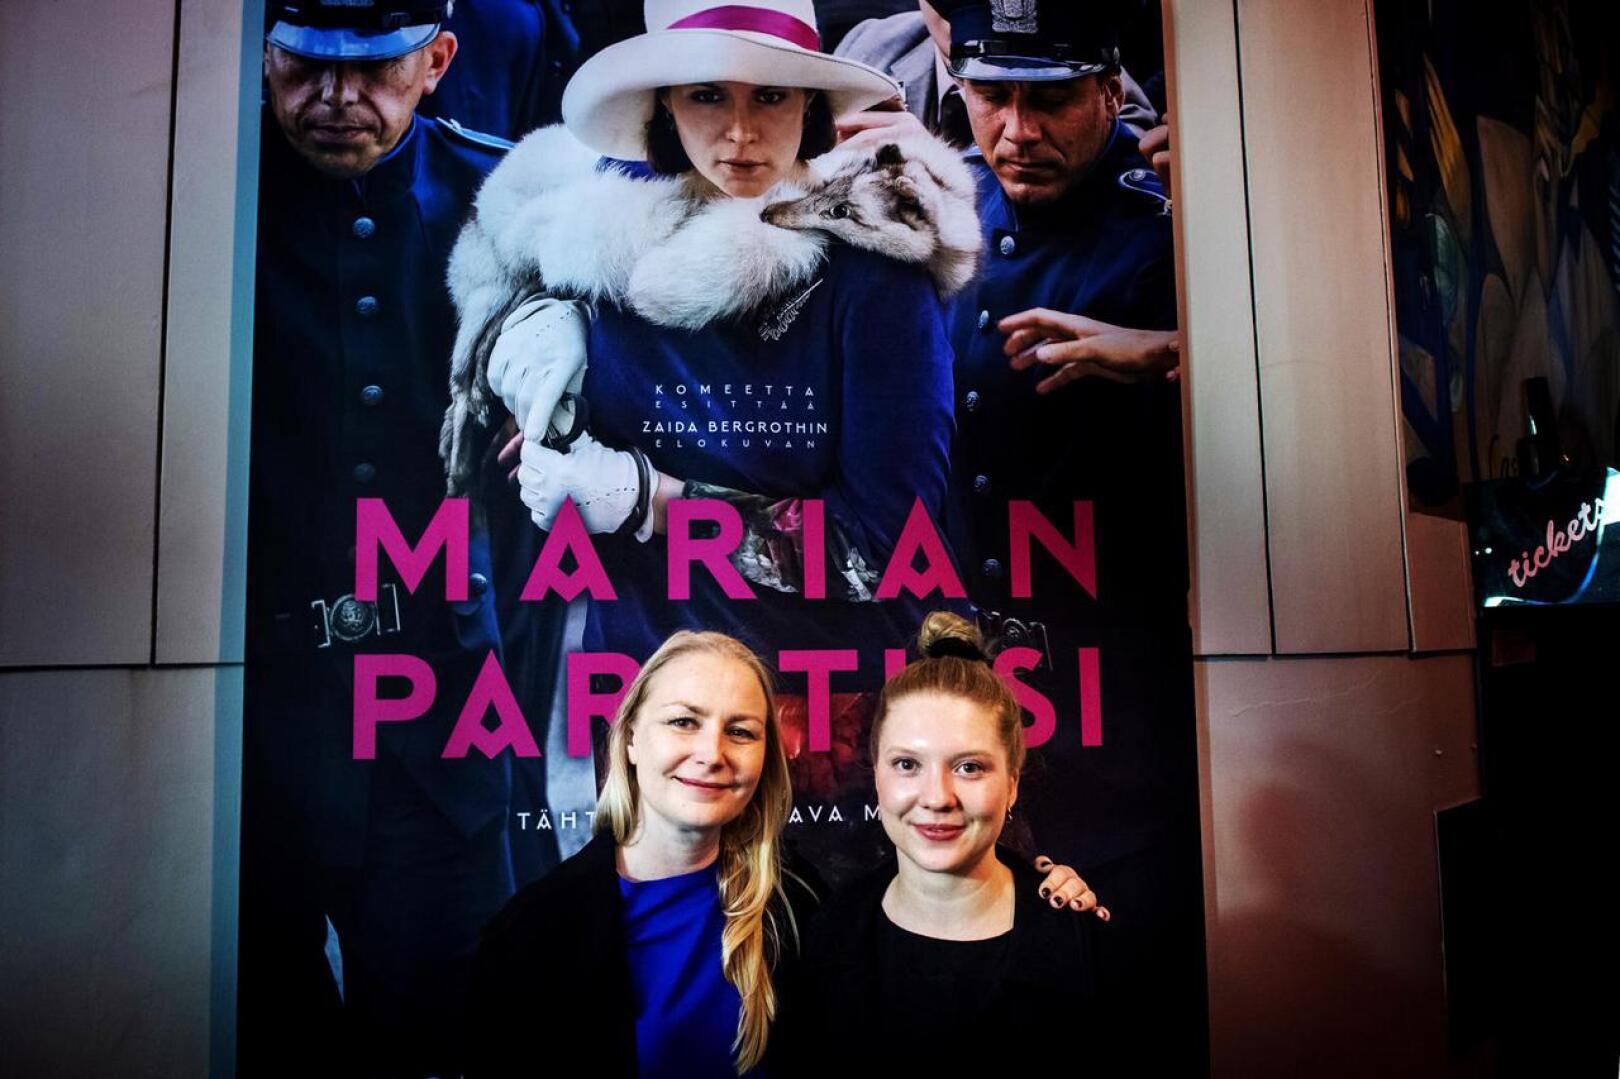 Marian paratiisin Suomen ennakkoesitys oli lauantaina Kokkolan elokuvajuhlilla. Elokuvan ohjasi  Zaida Bergroth, ja pääroolissa Salomena nähdään Satu Tuuli Karhu.